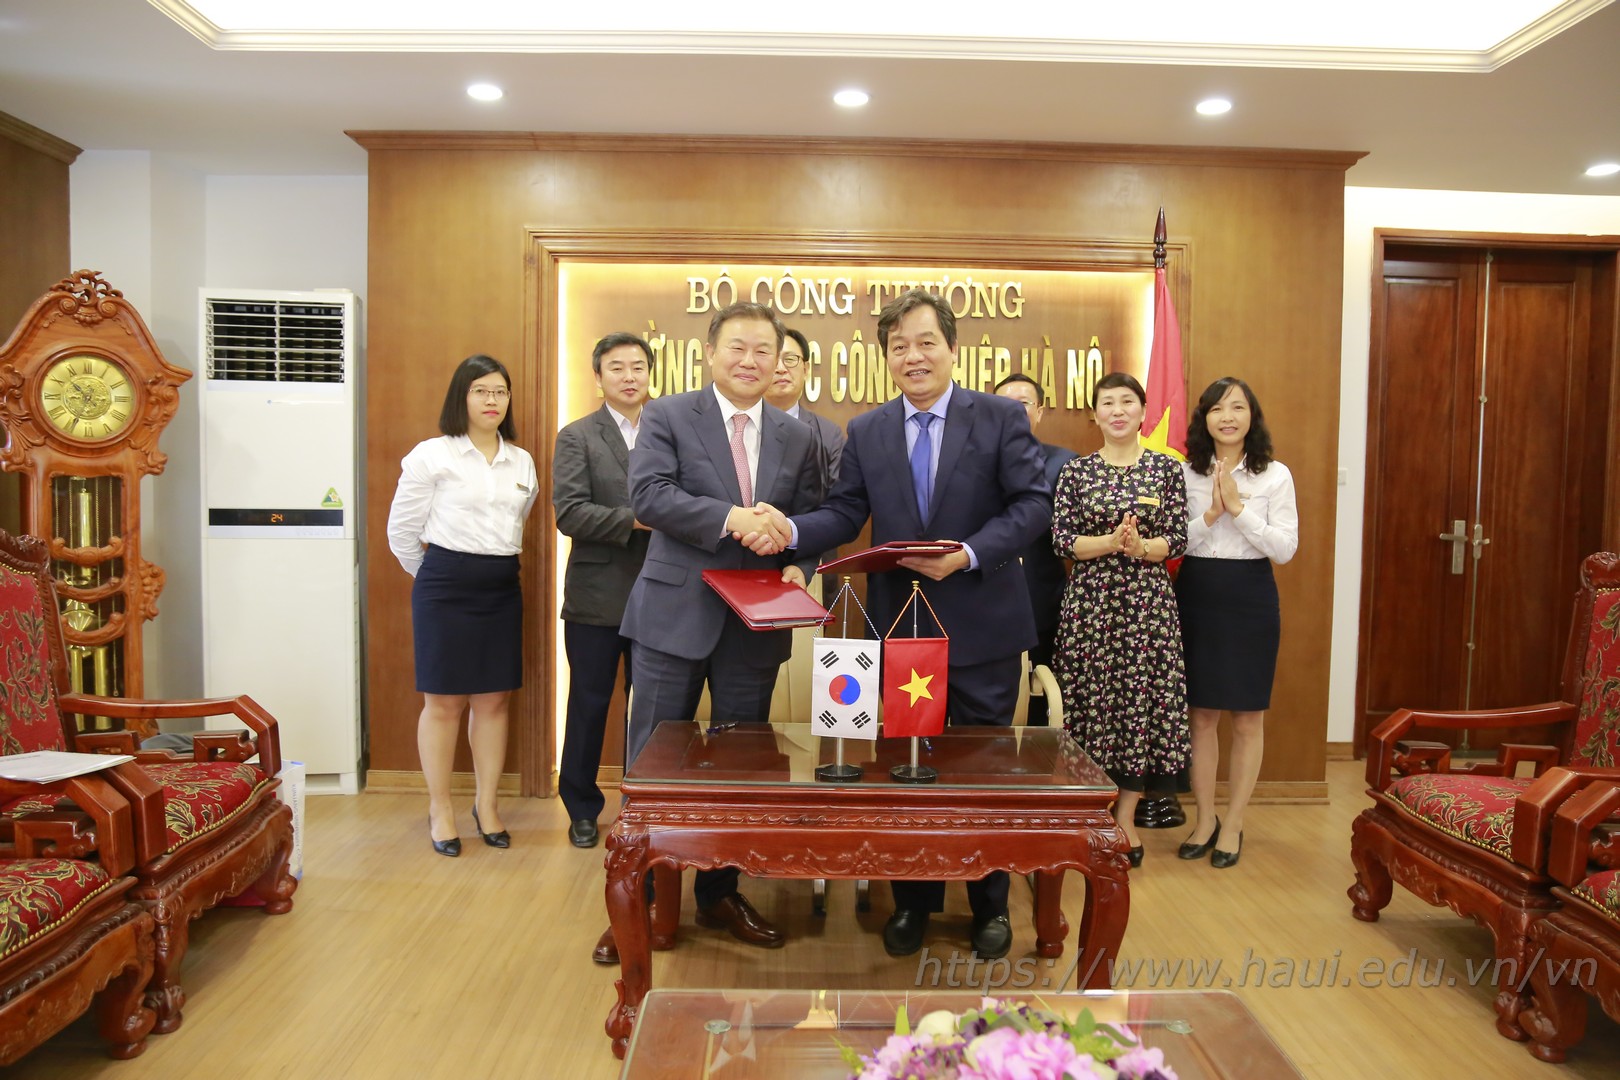 Trường Đại học Công nghiệp Hà Nội ký kết thỏa thuận hợp tác đào tạo với Trường Cao đẳng Kunjang, Hàn Quốc